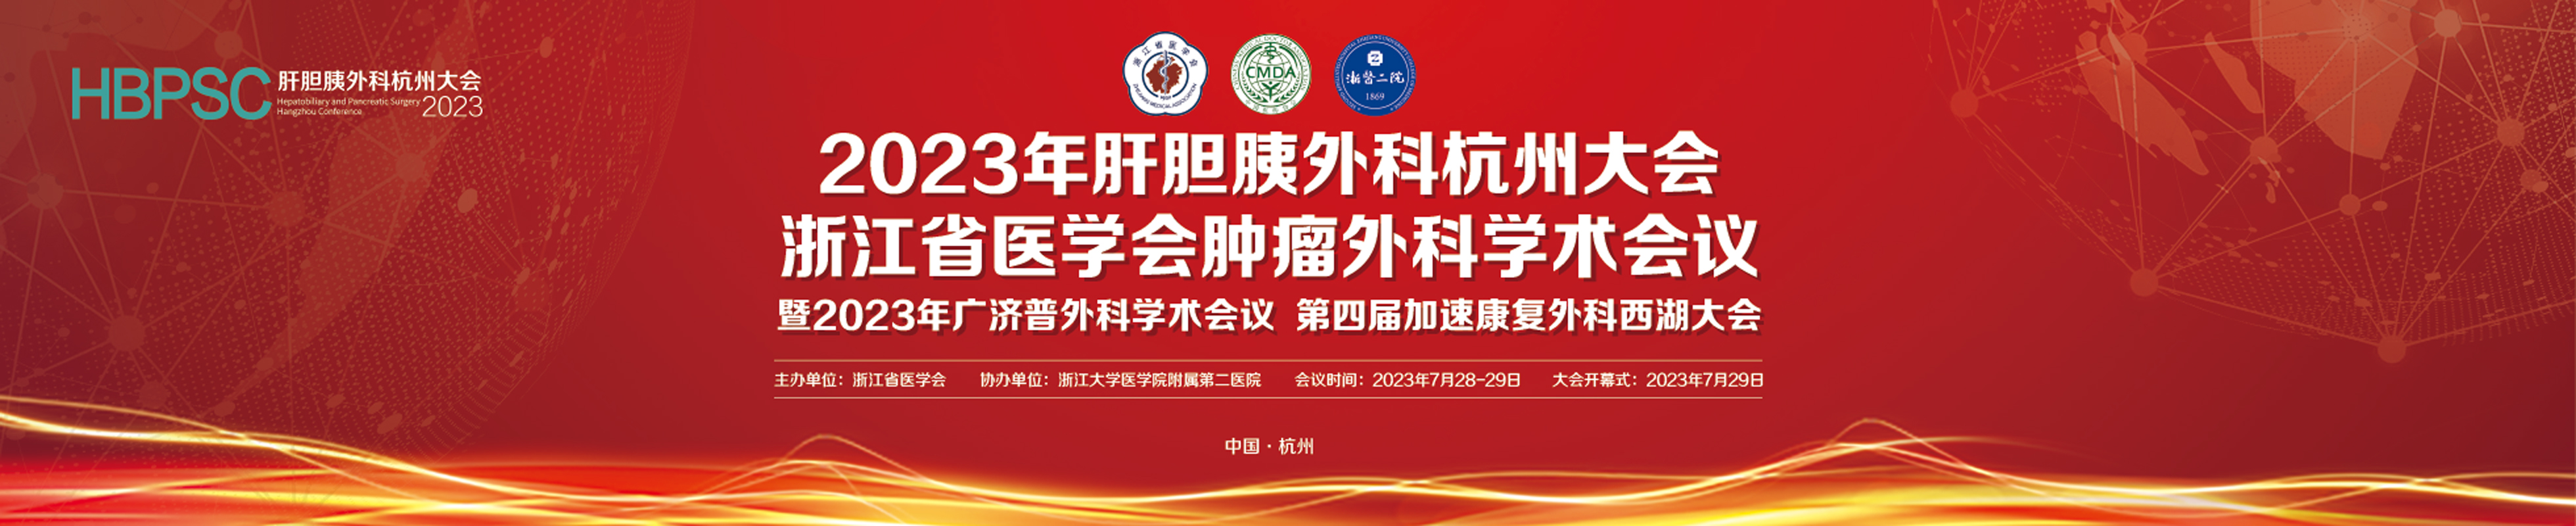 2023年肝胆胰外科杭州大会